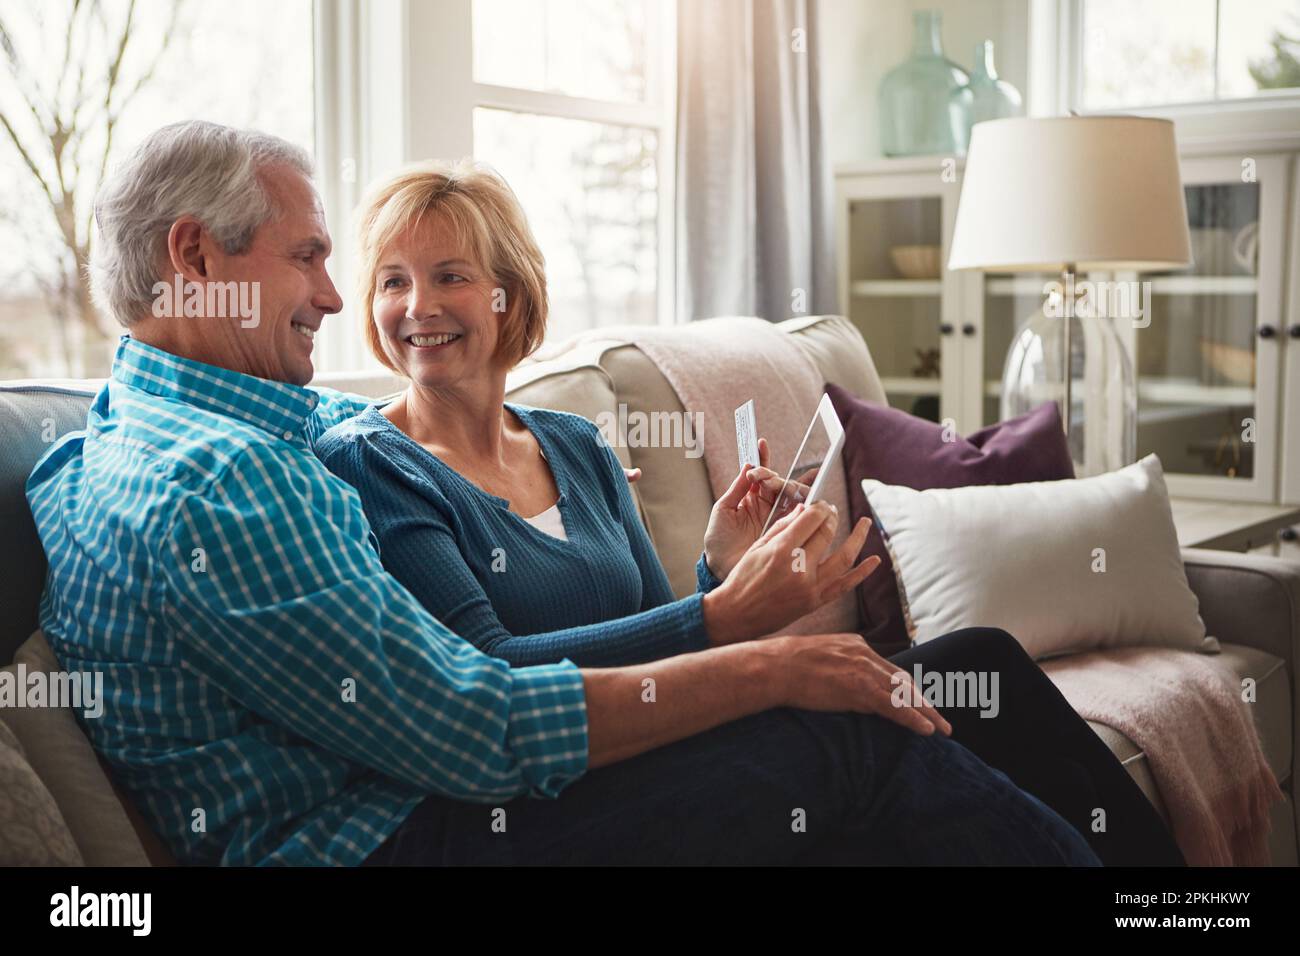 Confort, commodité et crédit combinés. un heureux couple mature se relaxant sur le canapé et utilisant une tablette numérique et une carte de crédit ensemble. Banque D'Images